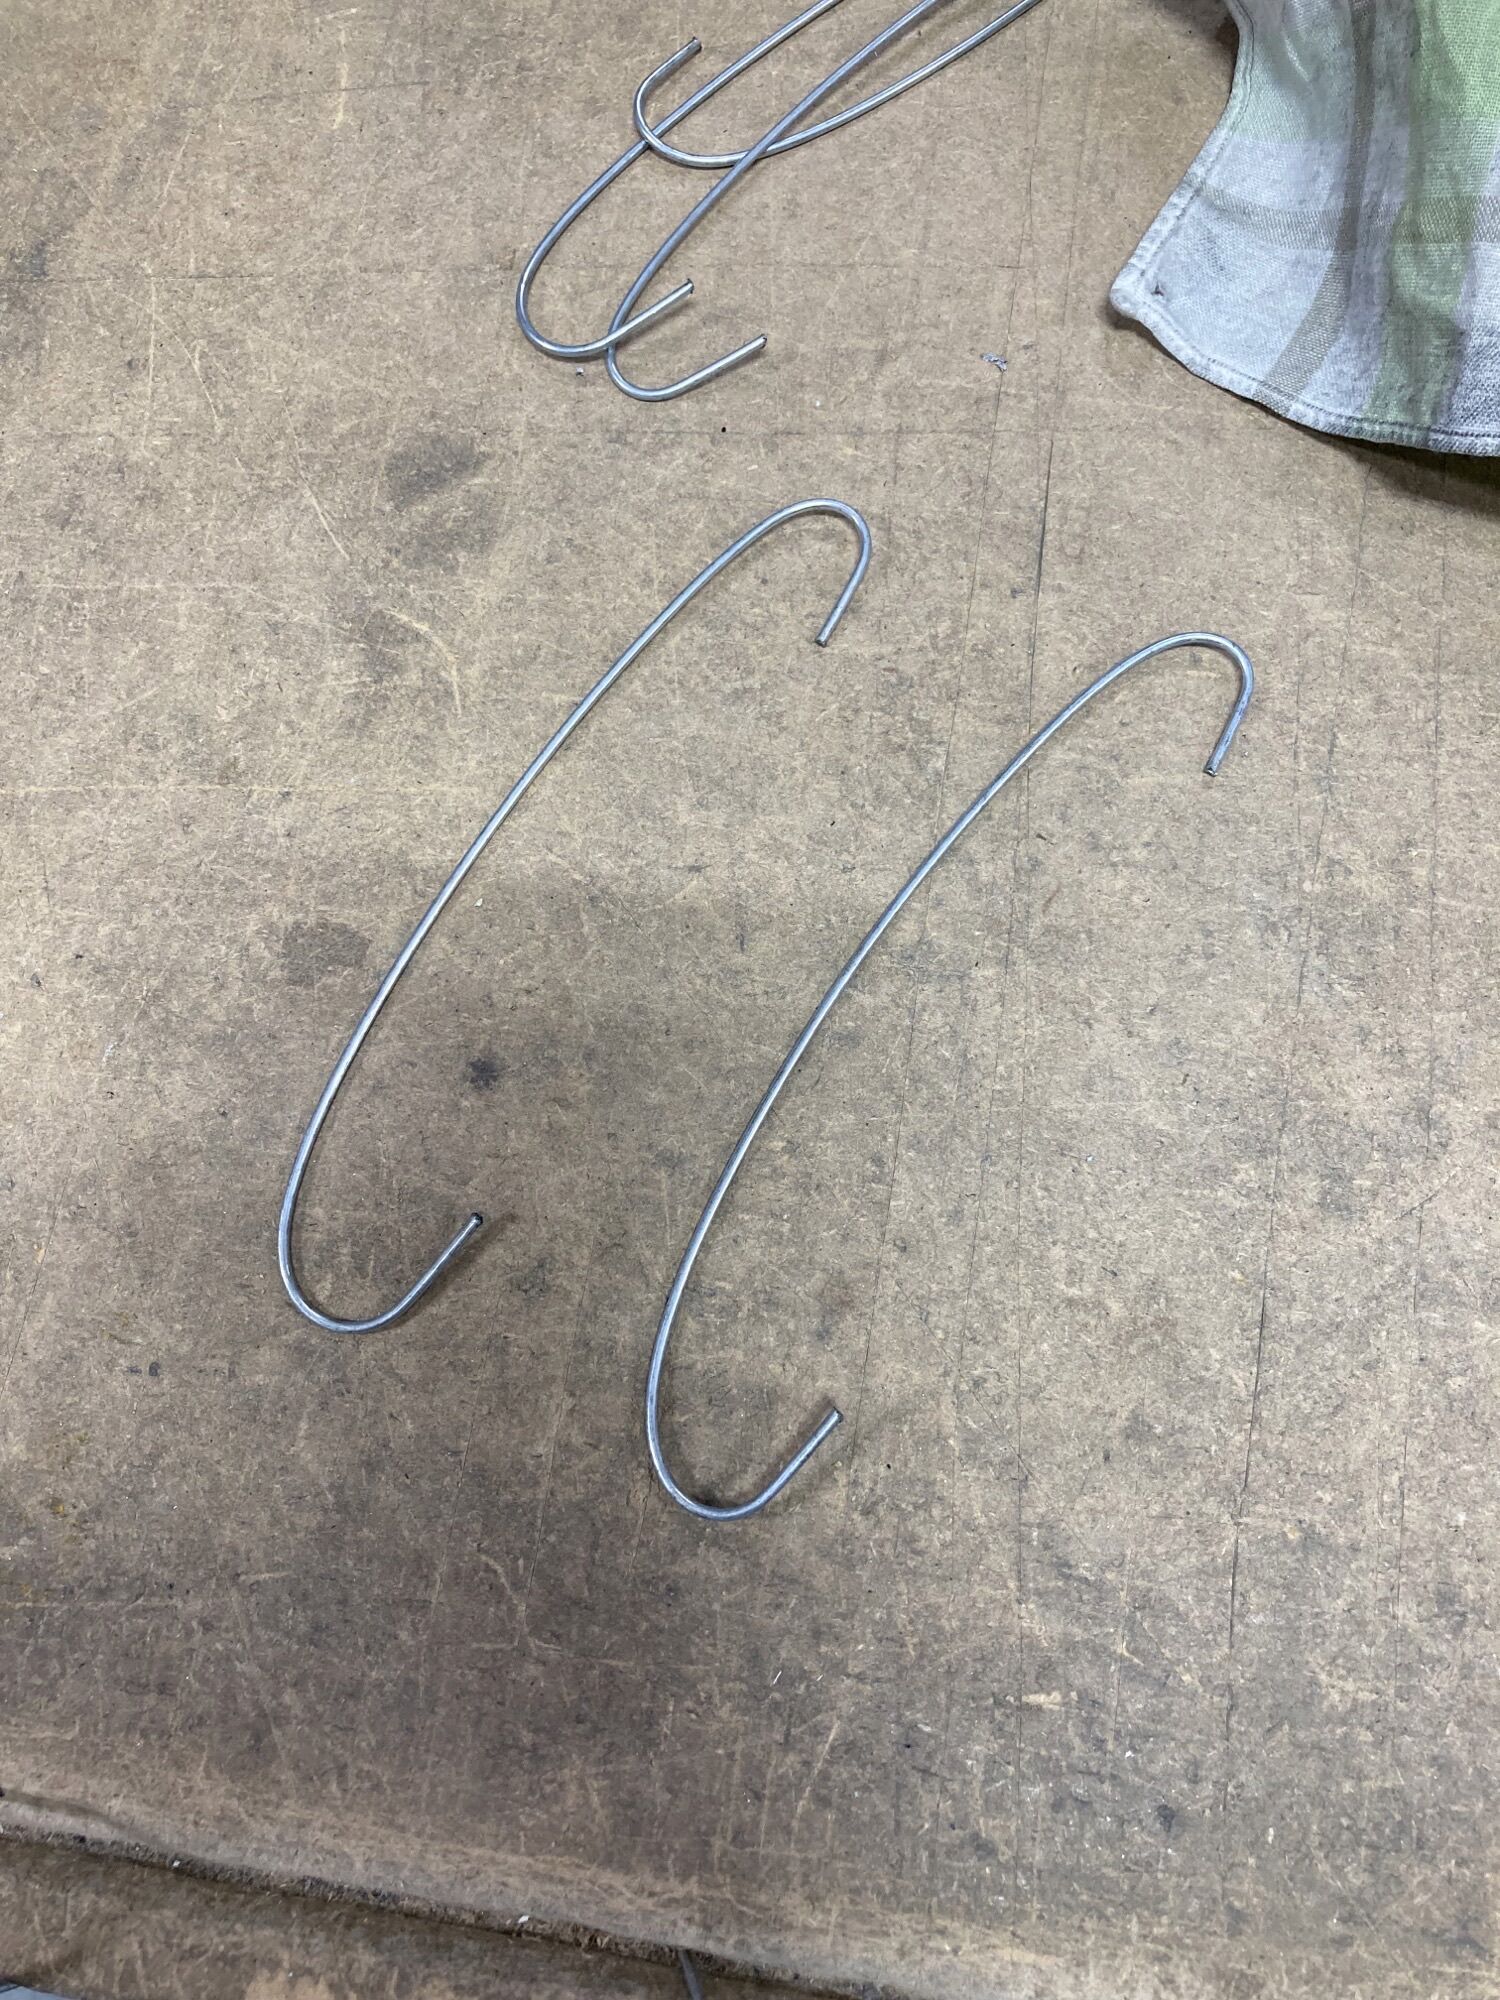 Steel Wire Rebar Stirrup Bending Machine